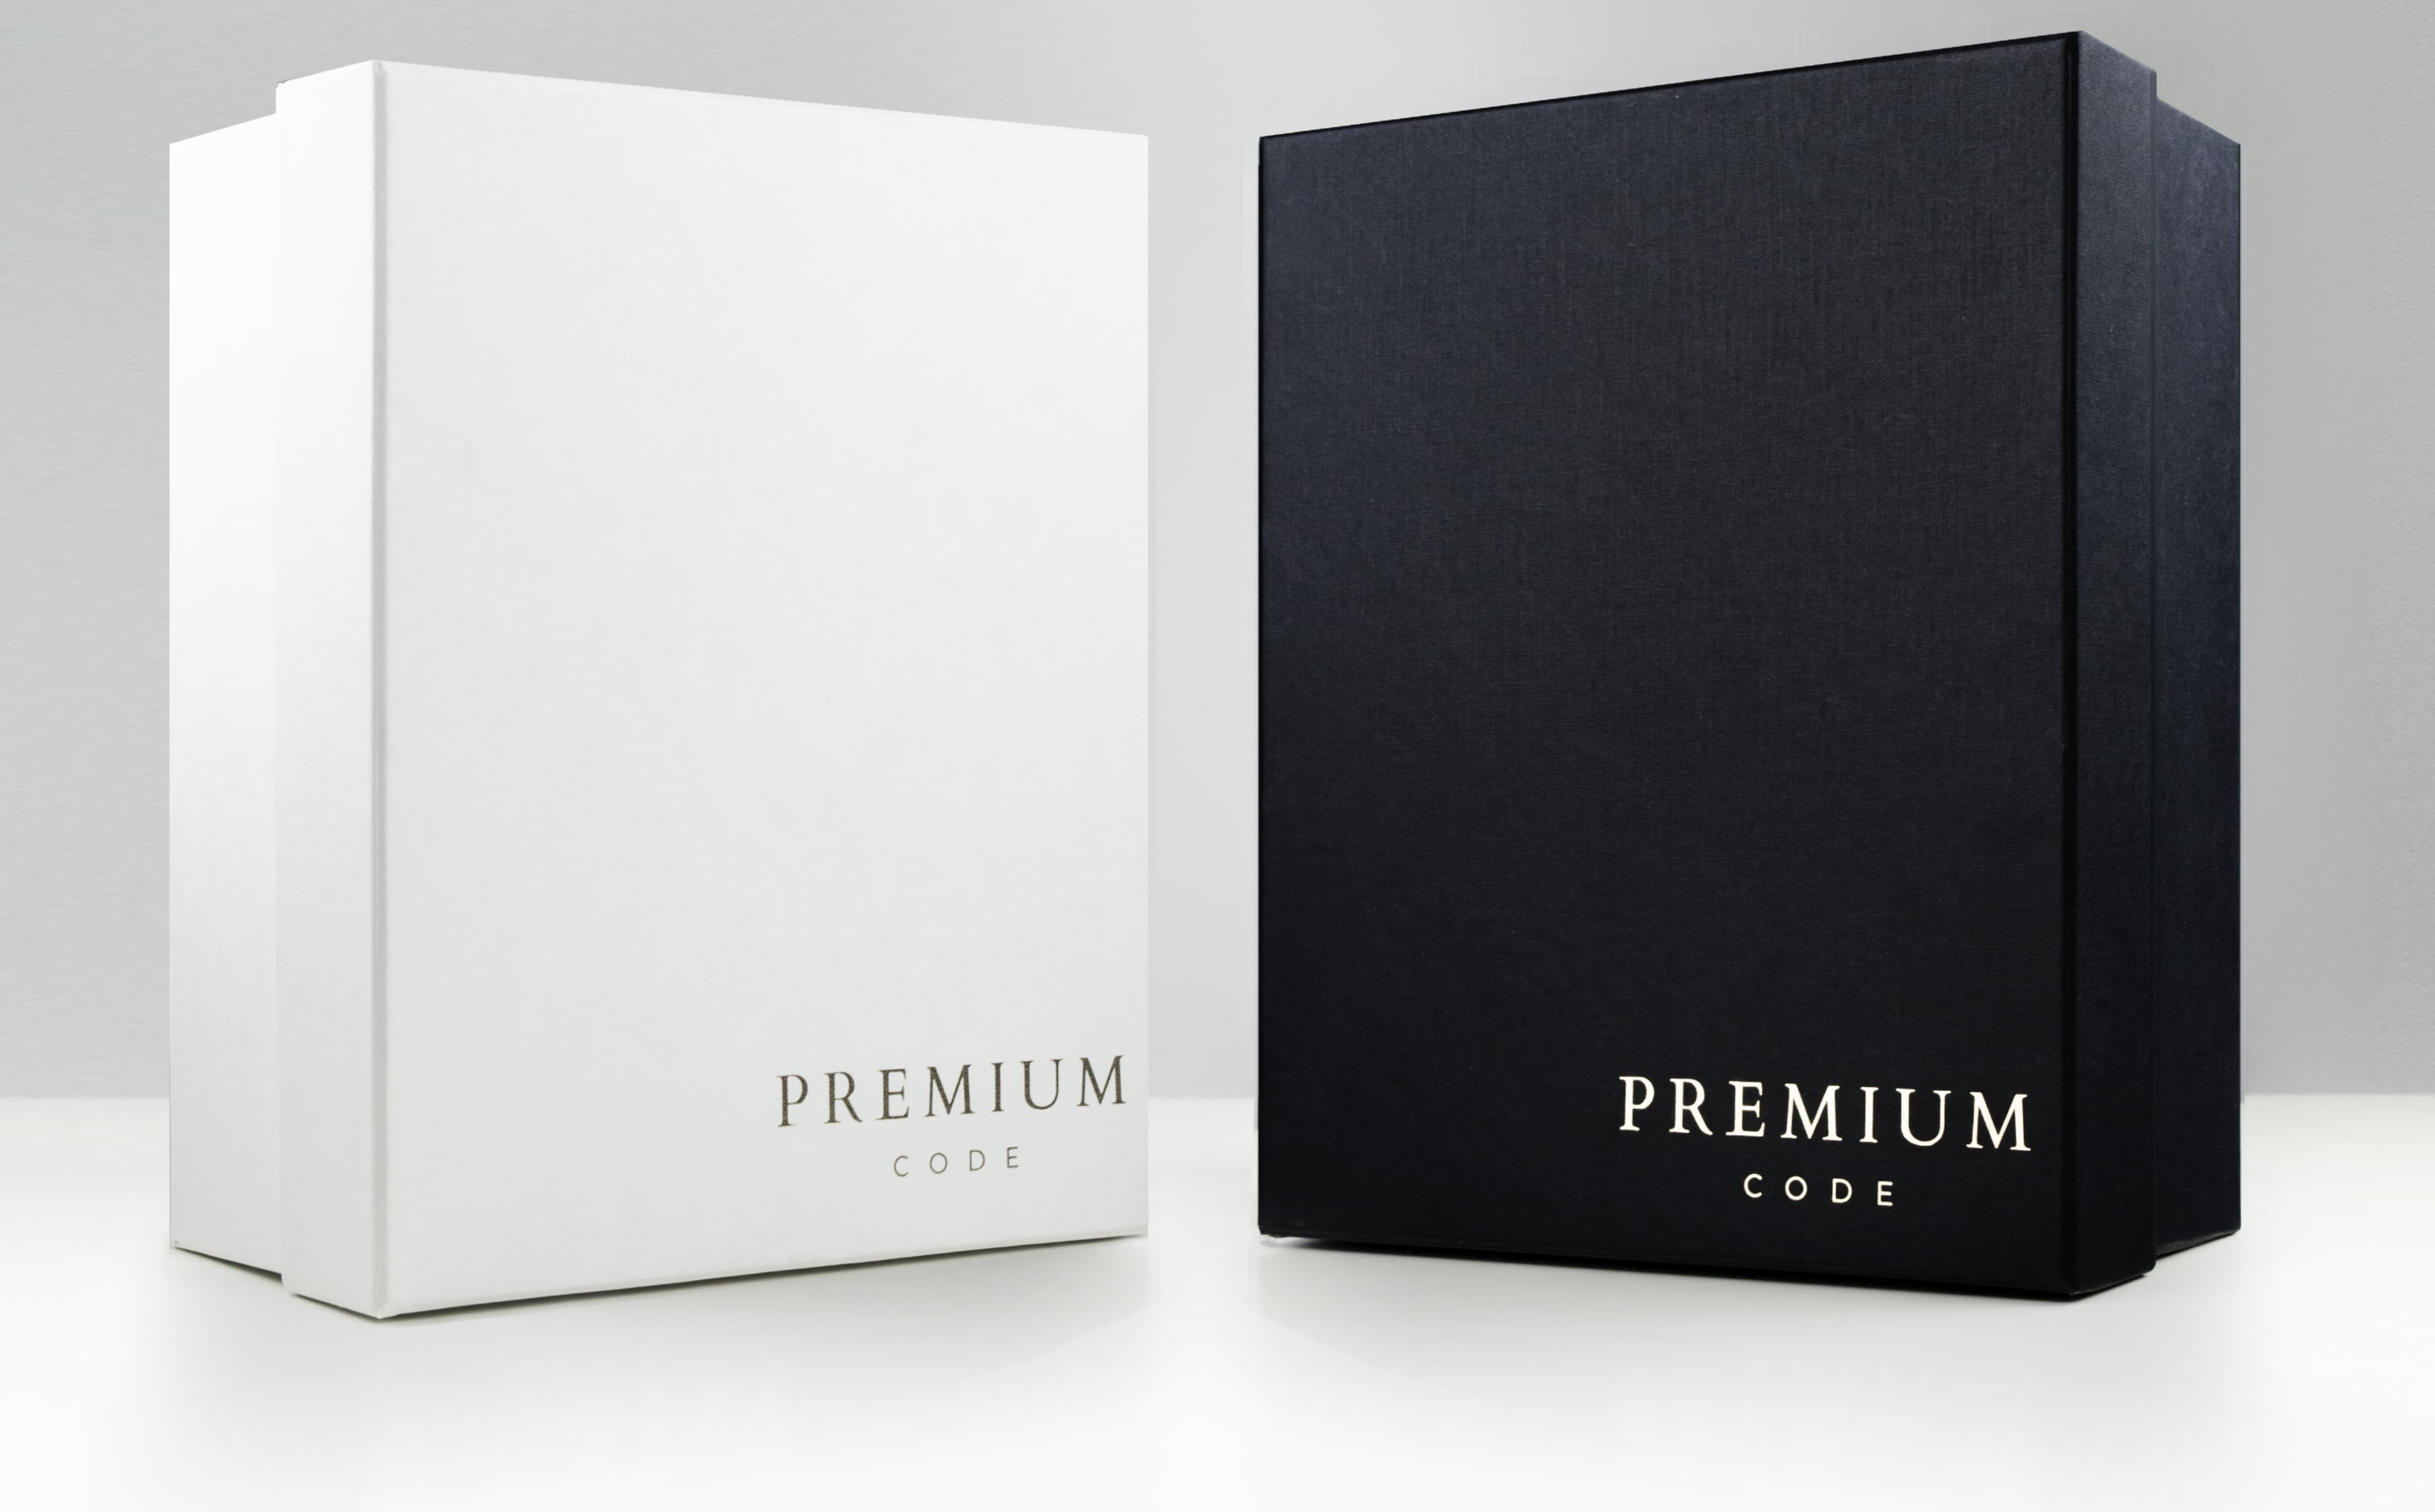 Premium boxes